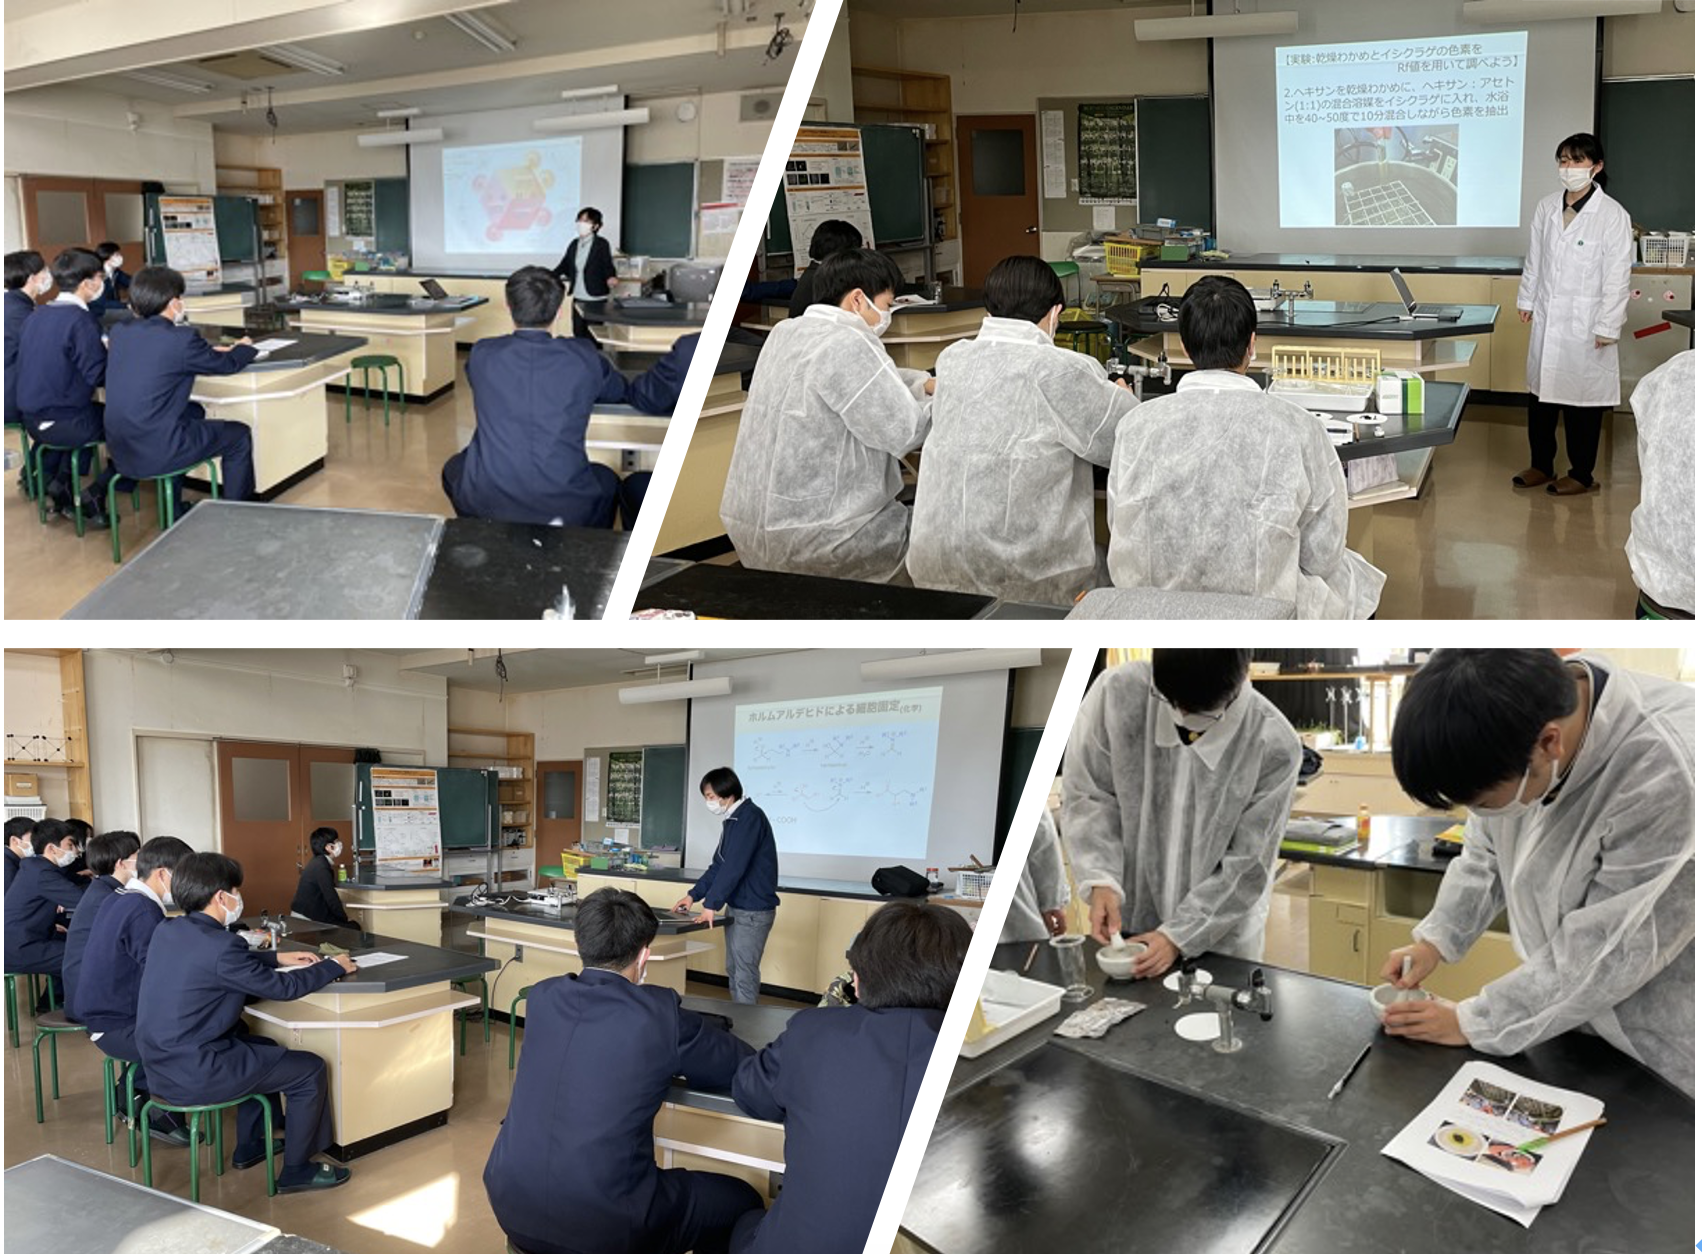 福島成蹊高校での高大連携イベントで藤原教授、前本助教が講演しました。